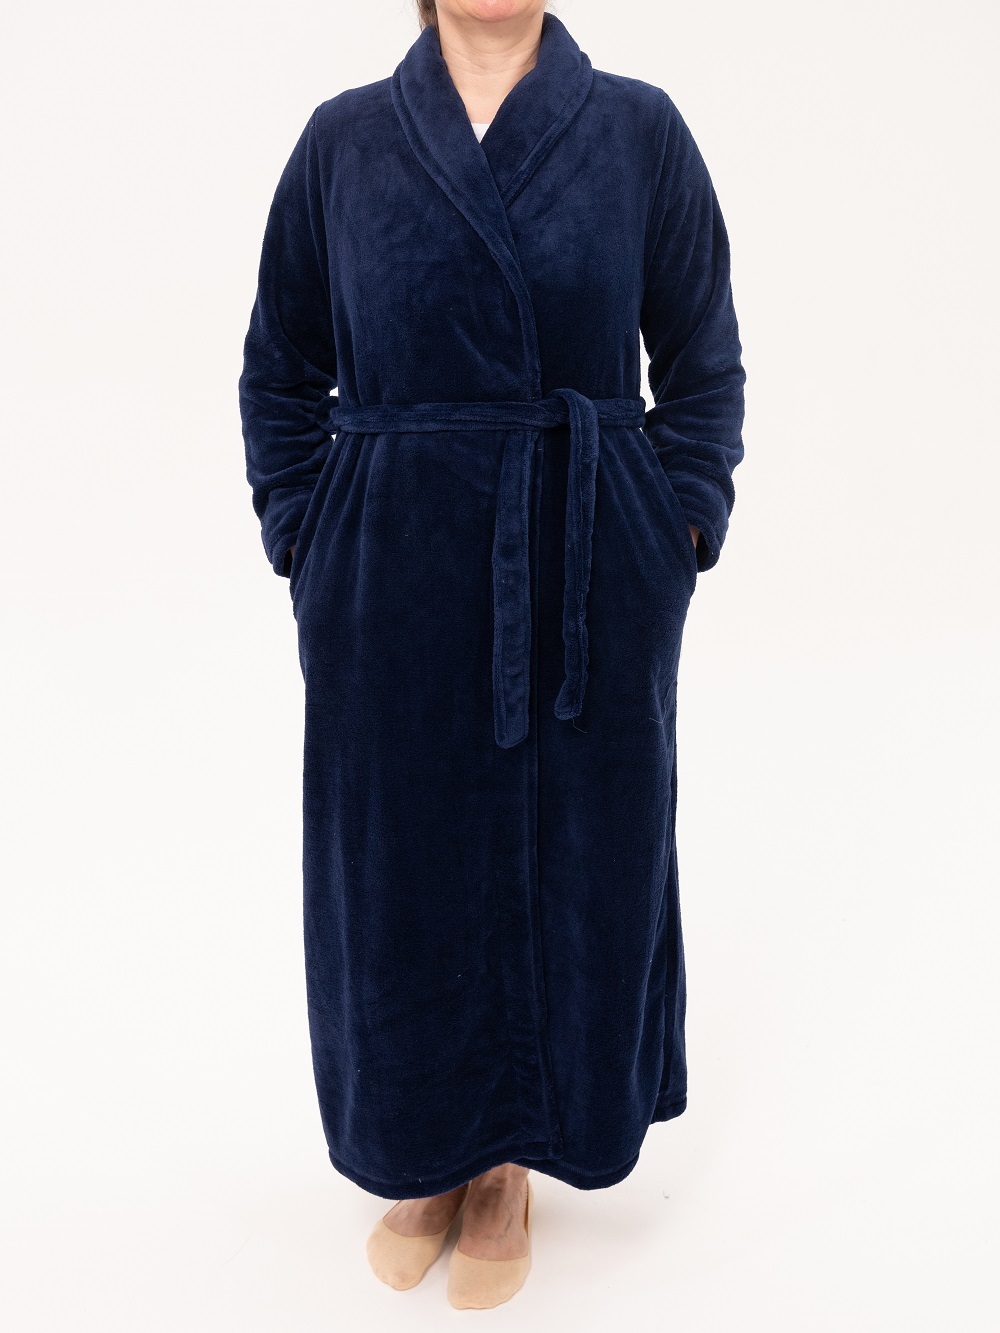 Mens Fleece Hooded Bathrobe Towel Warm Lounge Wear Housecoat Dressing Gown  Robe navy Blue Black  Fruugo IN